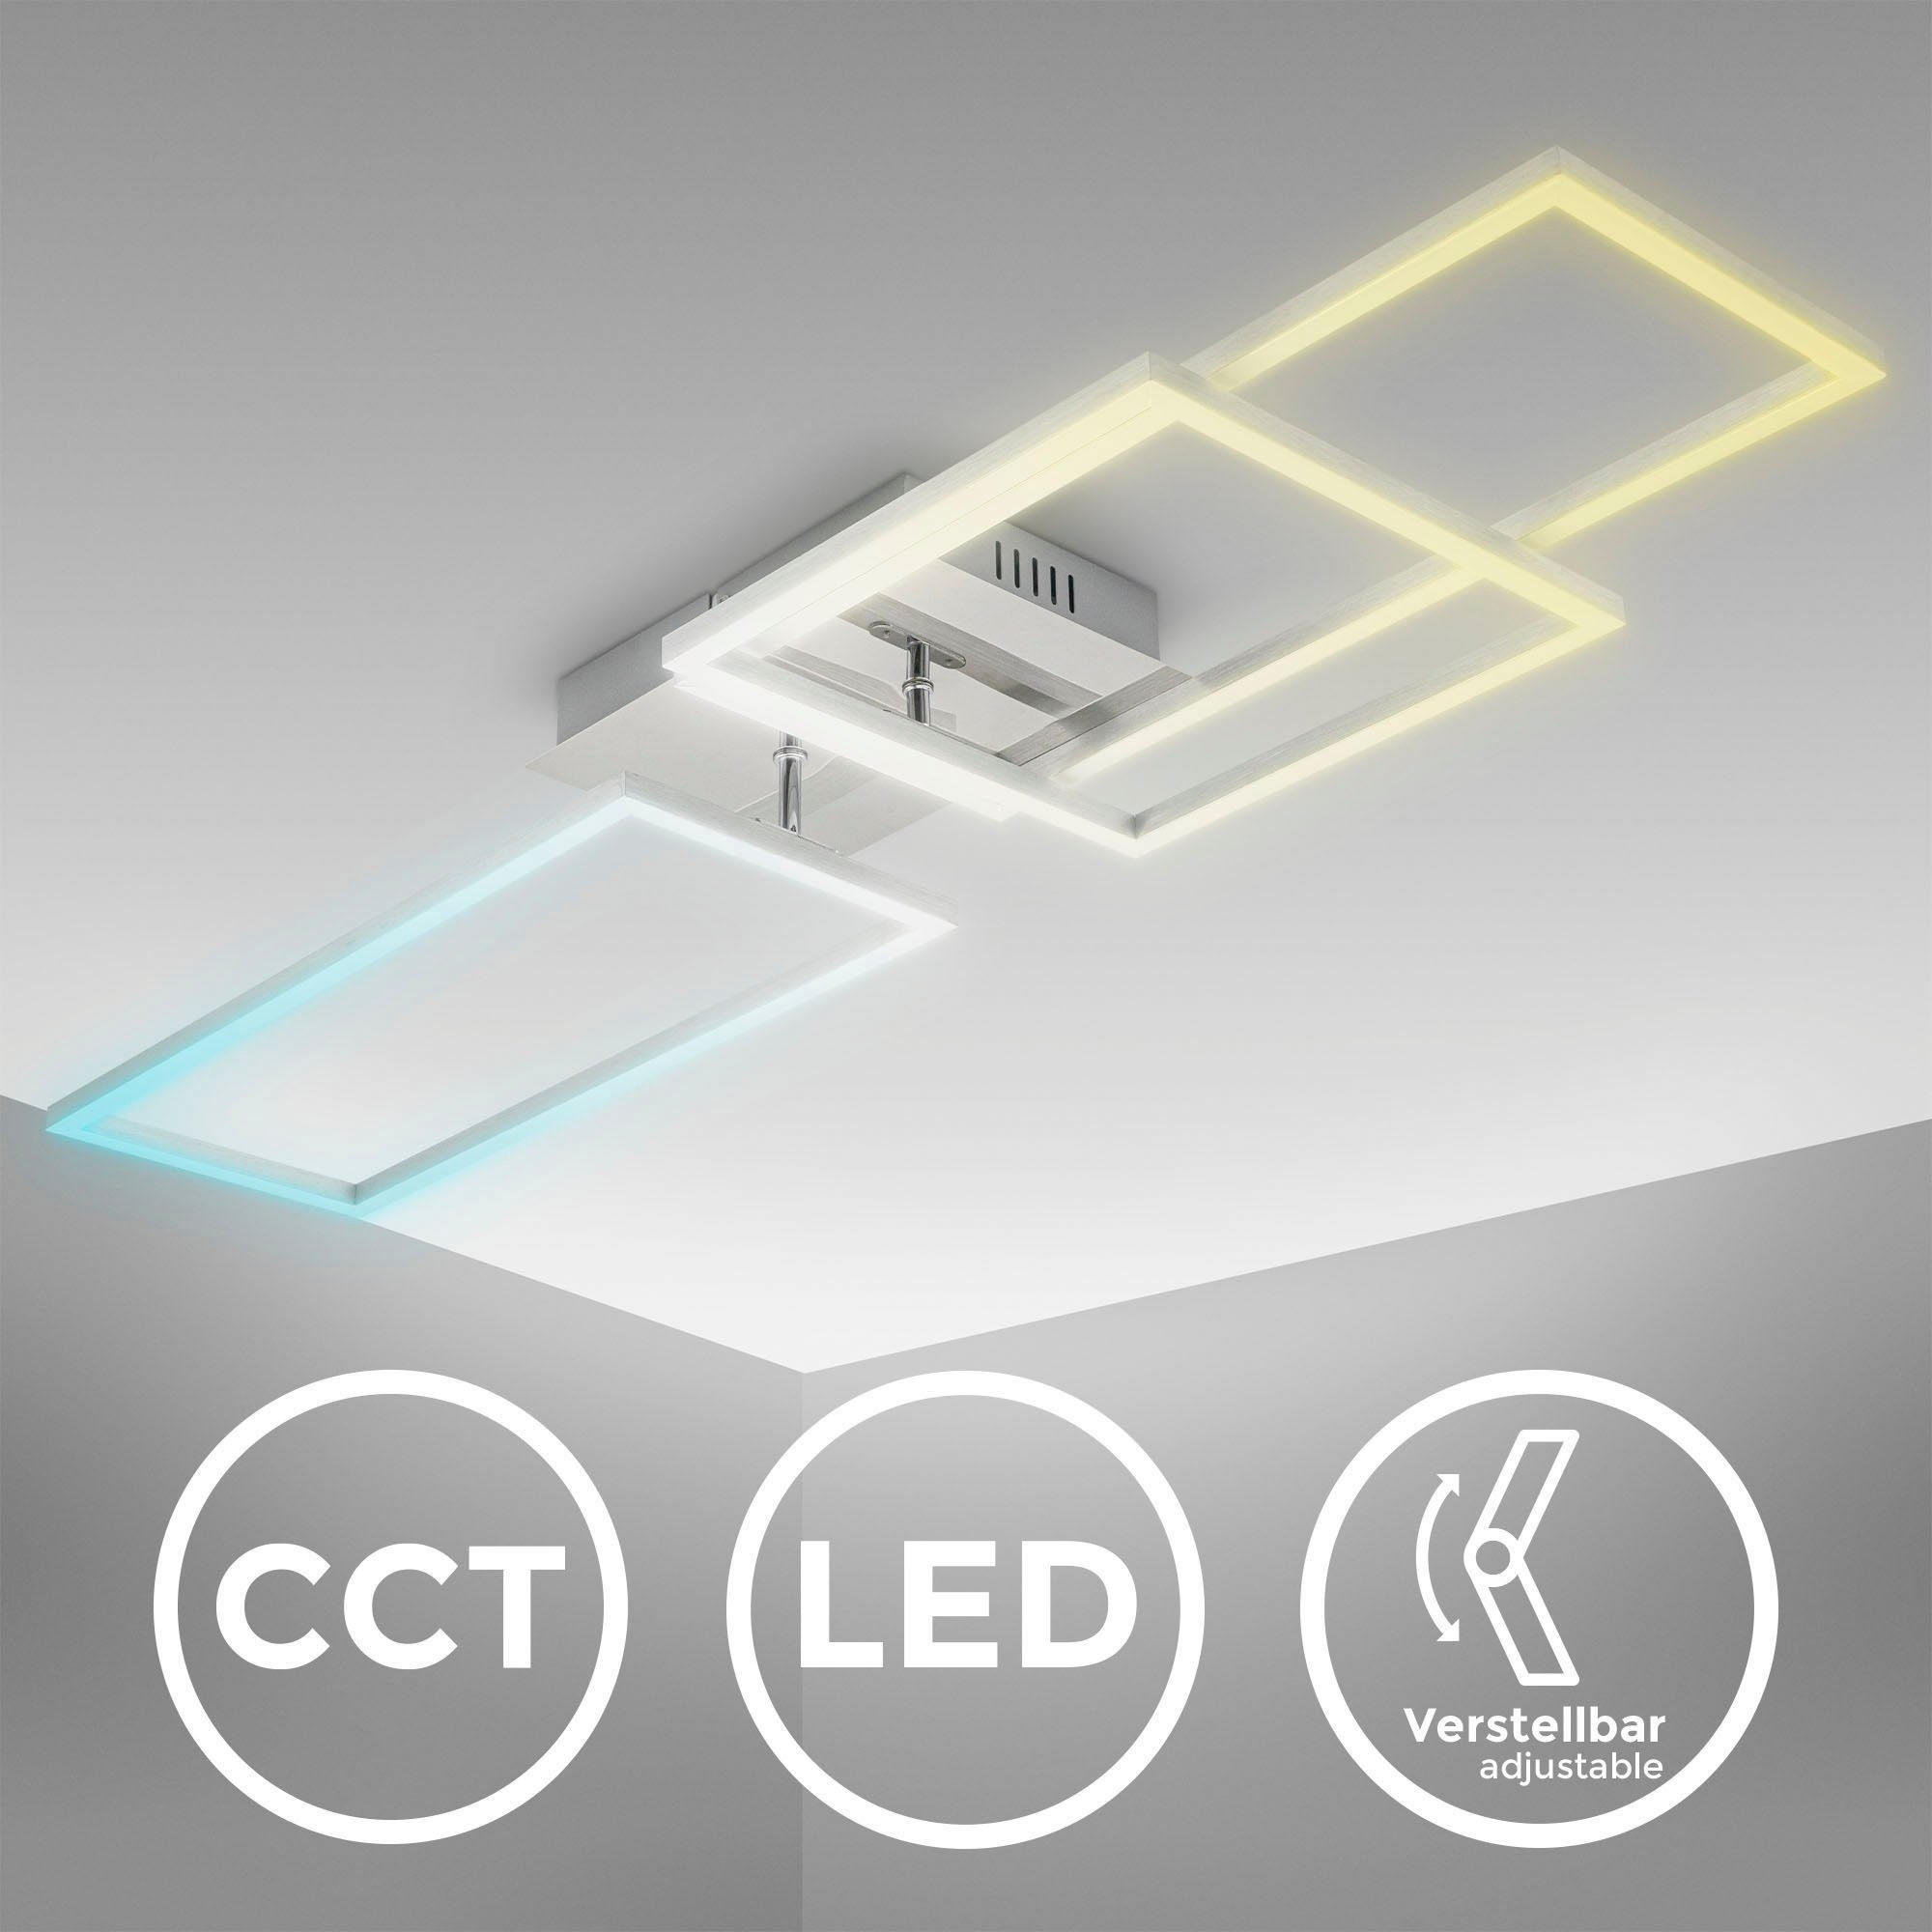 40 LED CCT Dimmbar, LED-Frame über Chrom, Watt, BK_FR1510 Deckenlampe, integriert, CCT - kaltweiß, Schwenkbar, Farbtemperatursteuerung, LED Kaltweiß-Warmweiß, fest Wohnzimmerlampe Fernbedienung, B.K.Licht Deckenleuchte - warmweiß